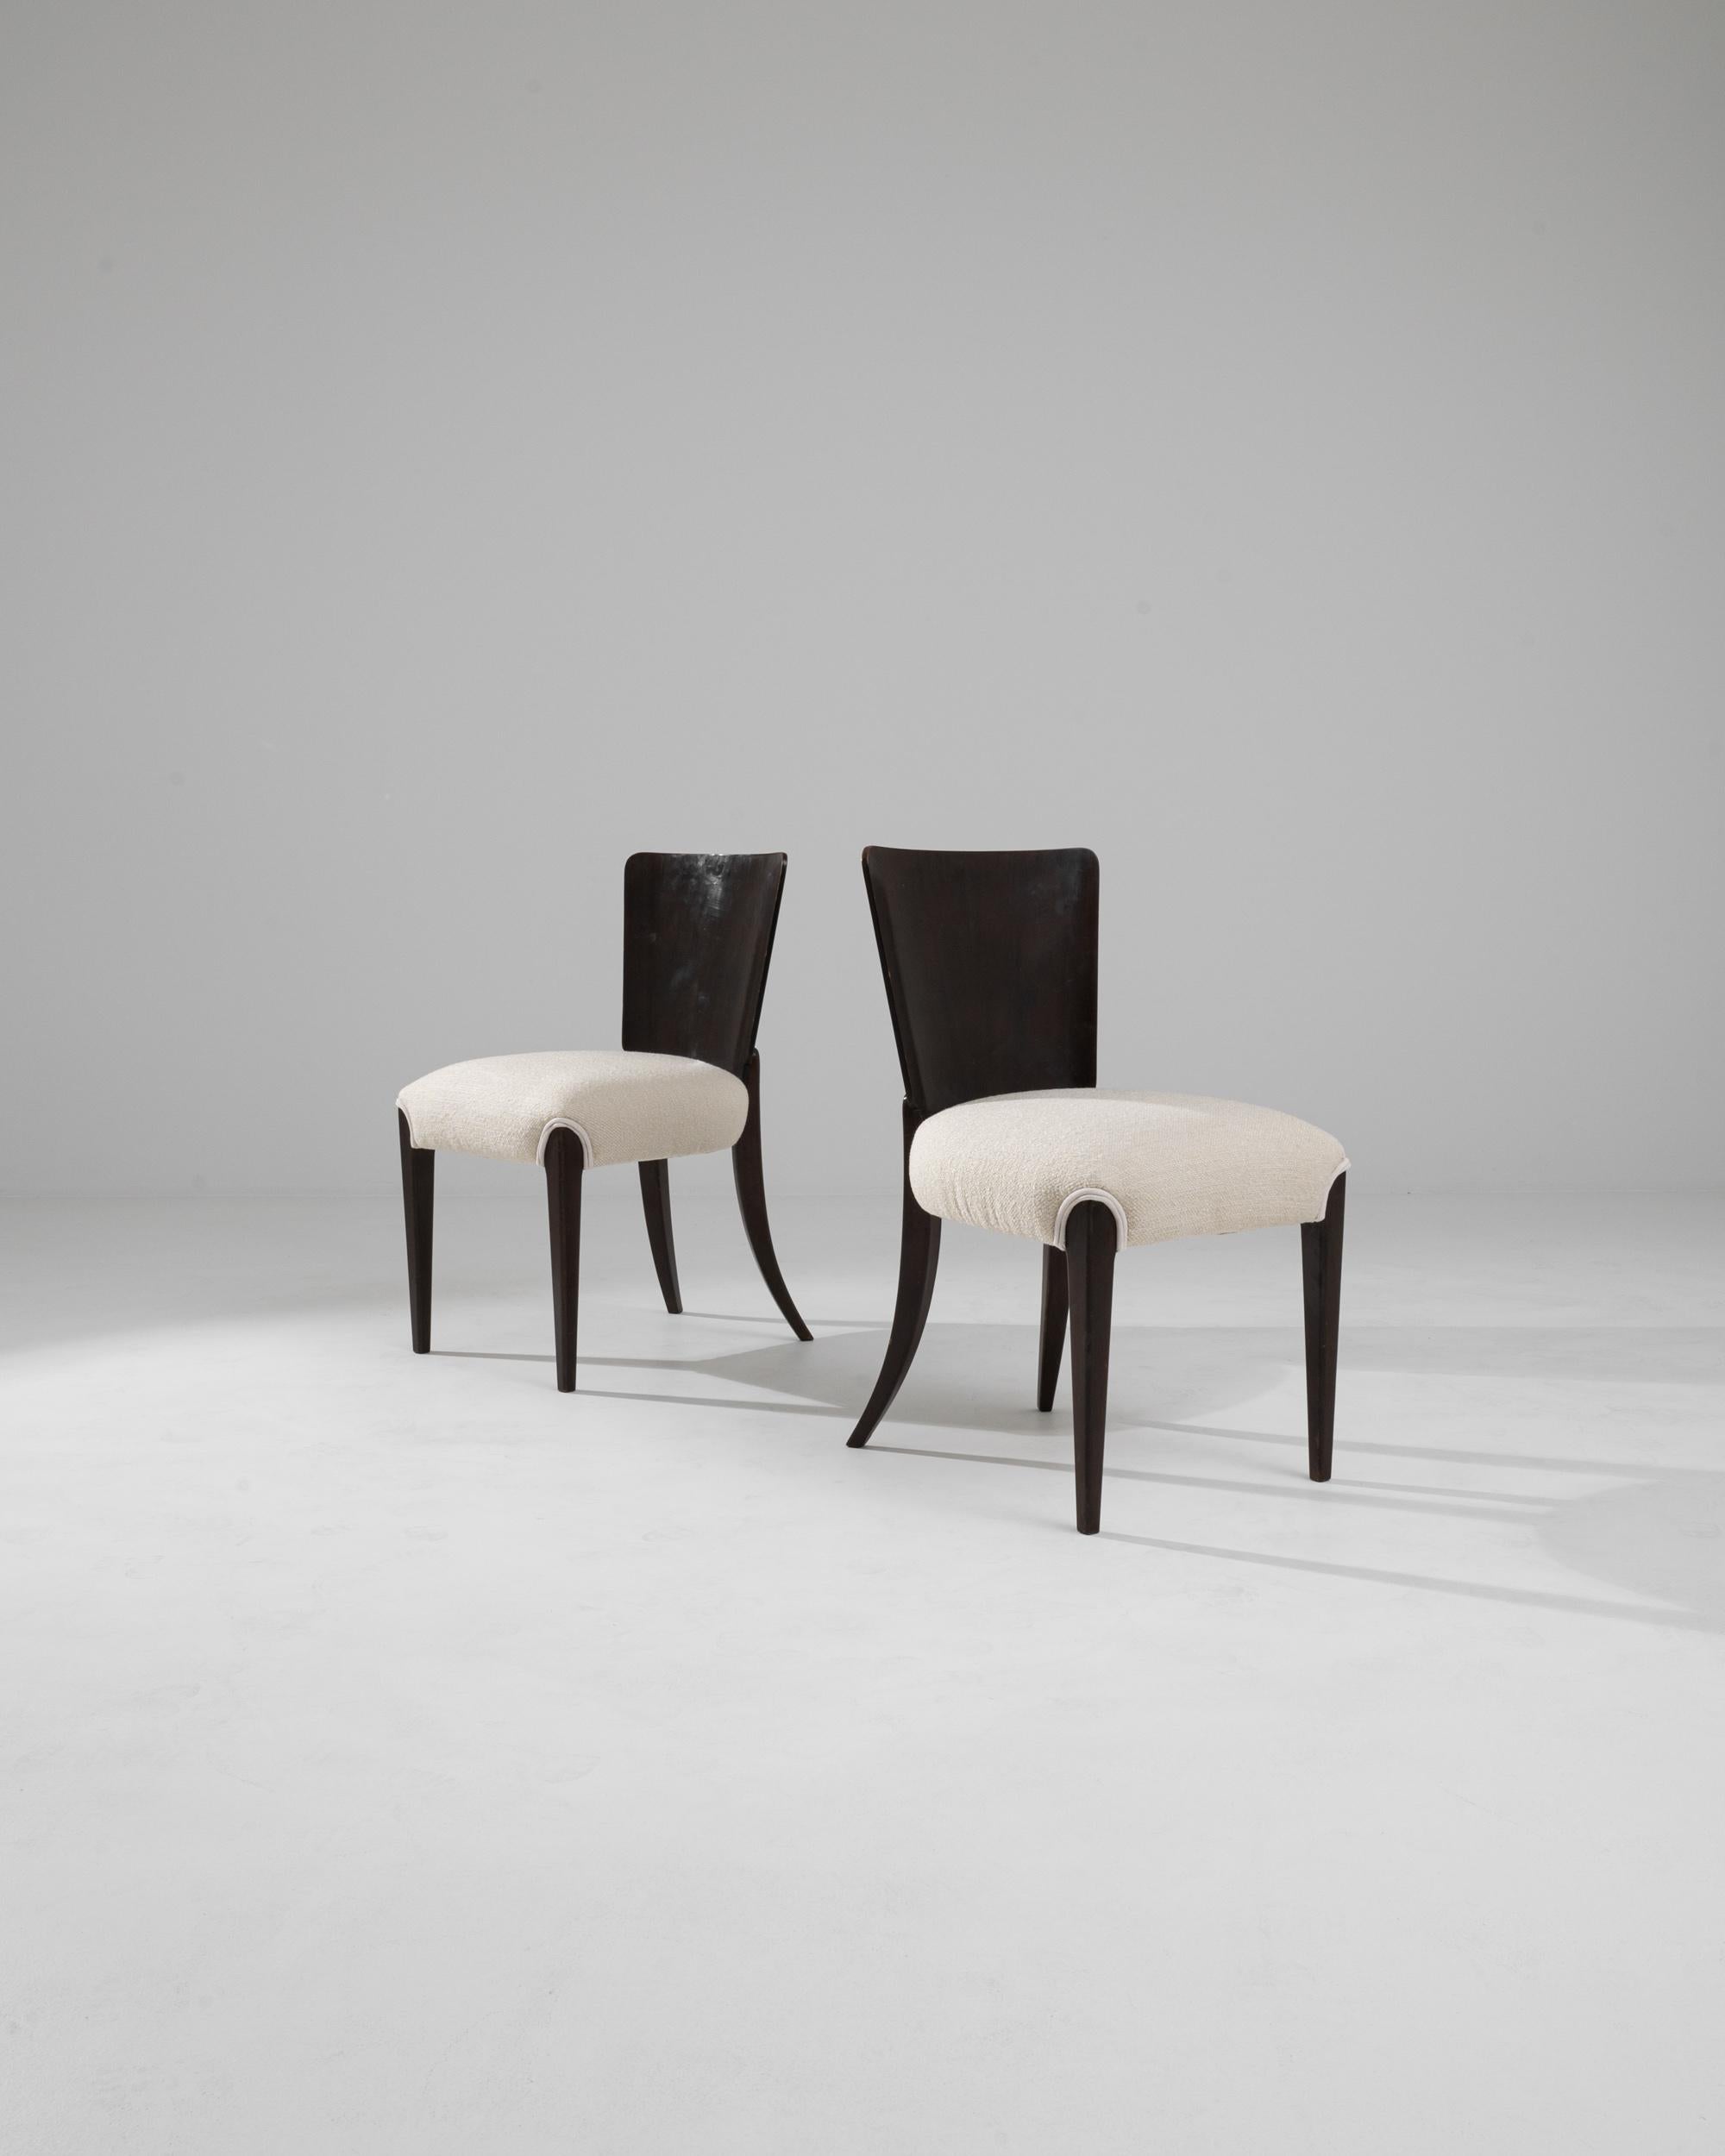 Die tschechischen Stühle des 20. Jahrhunderts von J. Halabala sind eine Meisterklasse in der Verschmelzung von funktionellem Design und künstlerischer Eleganz. Diese Stühle zeigen die für Halabala charakteristischen stromlinienförmigen Kurven und